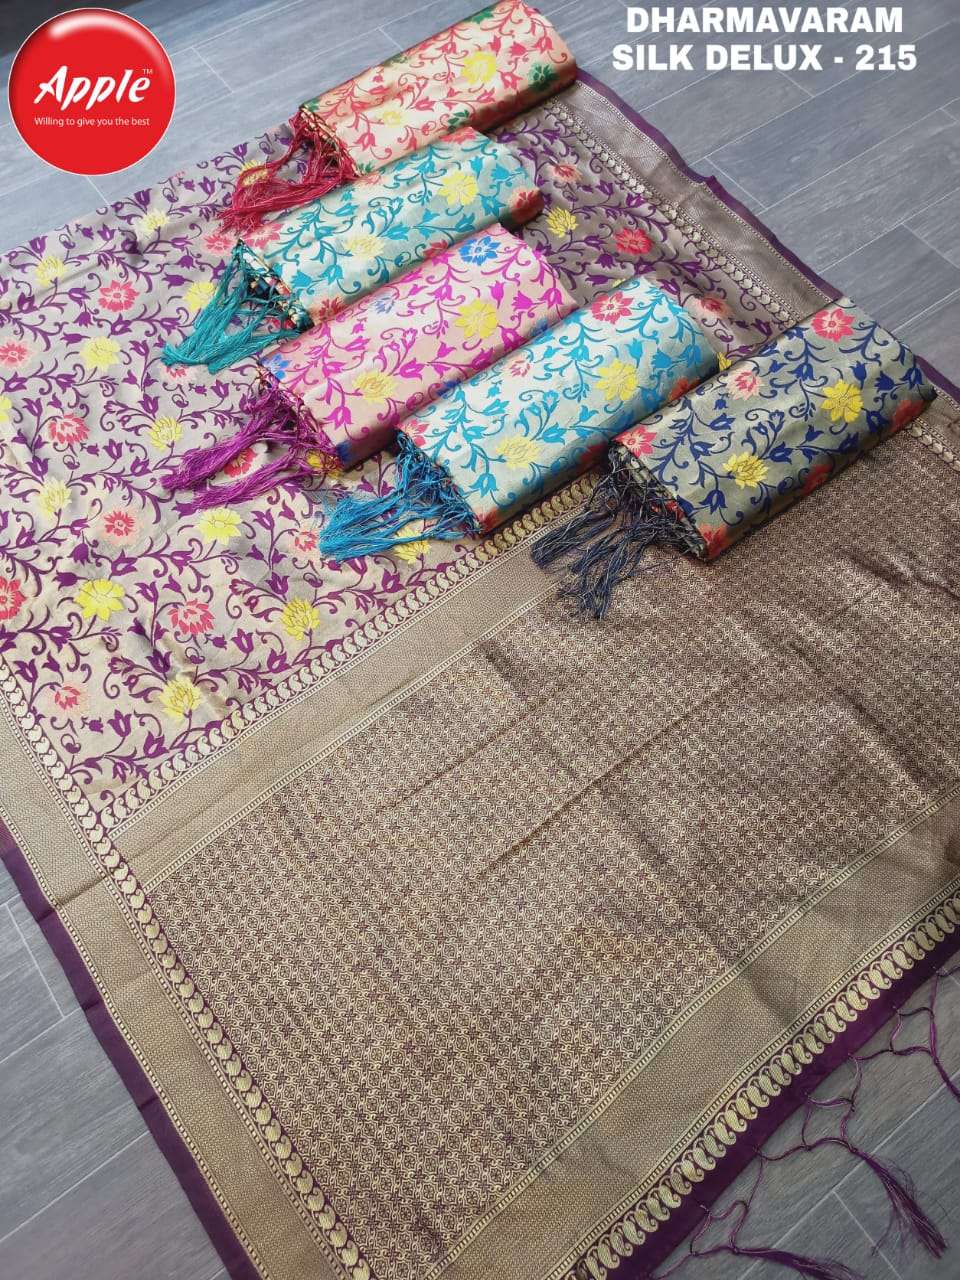 Apple sarees dharmavaram delux cotton silk sarees wholesaler